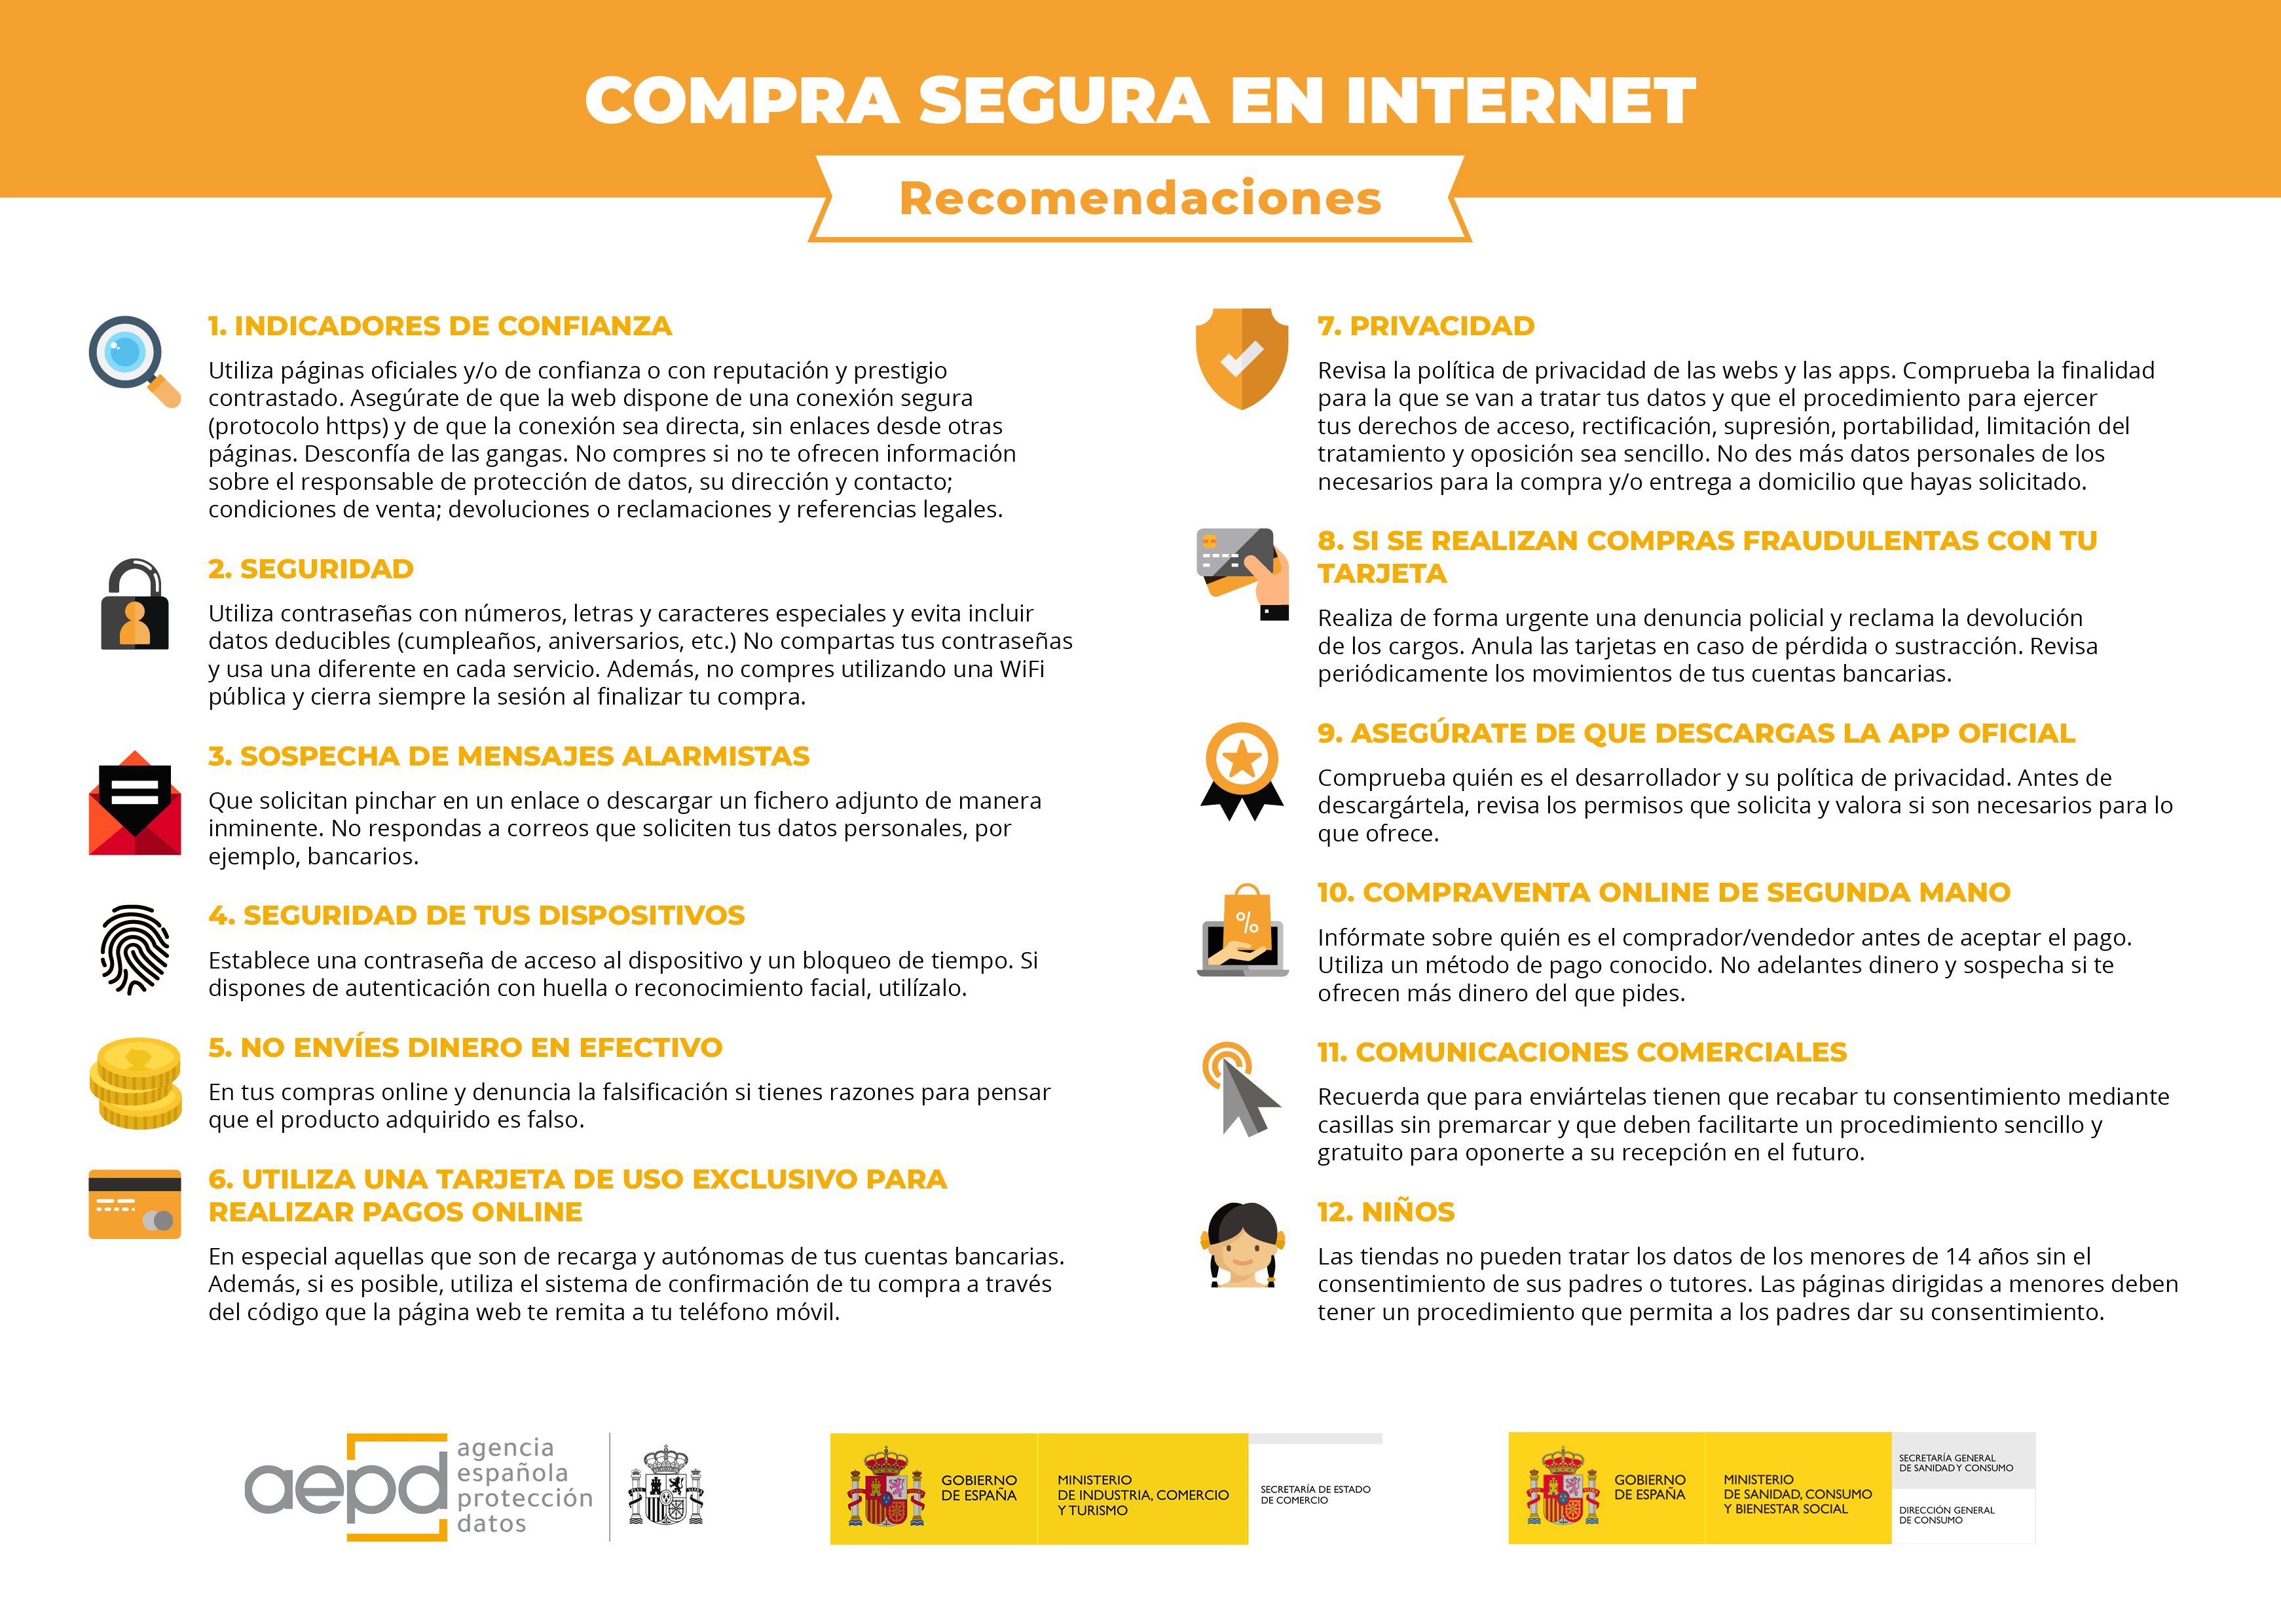 توییتر Agencia Española Protección de Datos در توییتر: «Sigue estas sencillas 12 recomendaciones para comprar de manera segura por Internet esta Navidad. #ProtegeTusDatos https://t.co/zJSWveuXif https://t.co/XcSvZNWTZo»